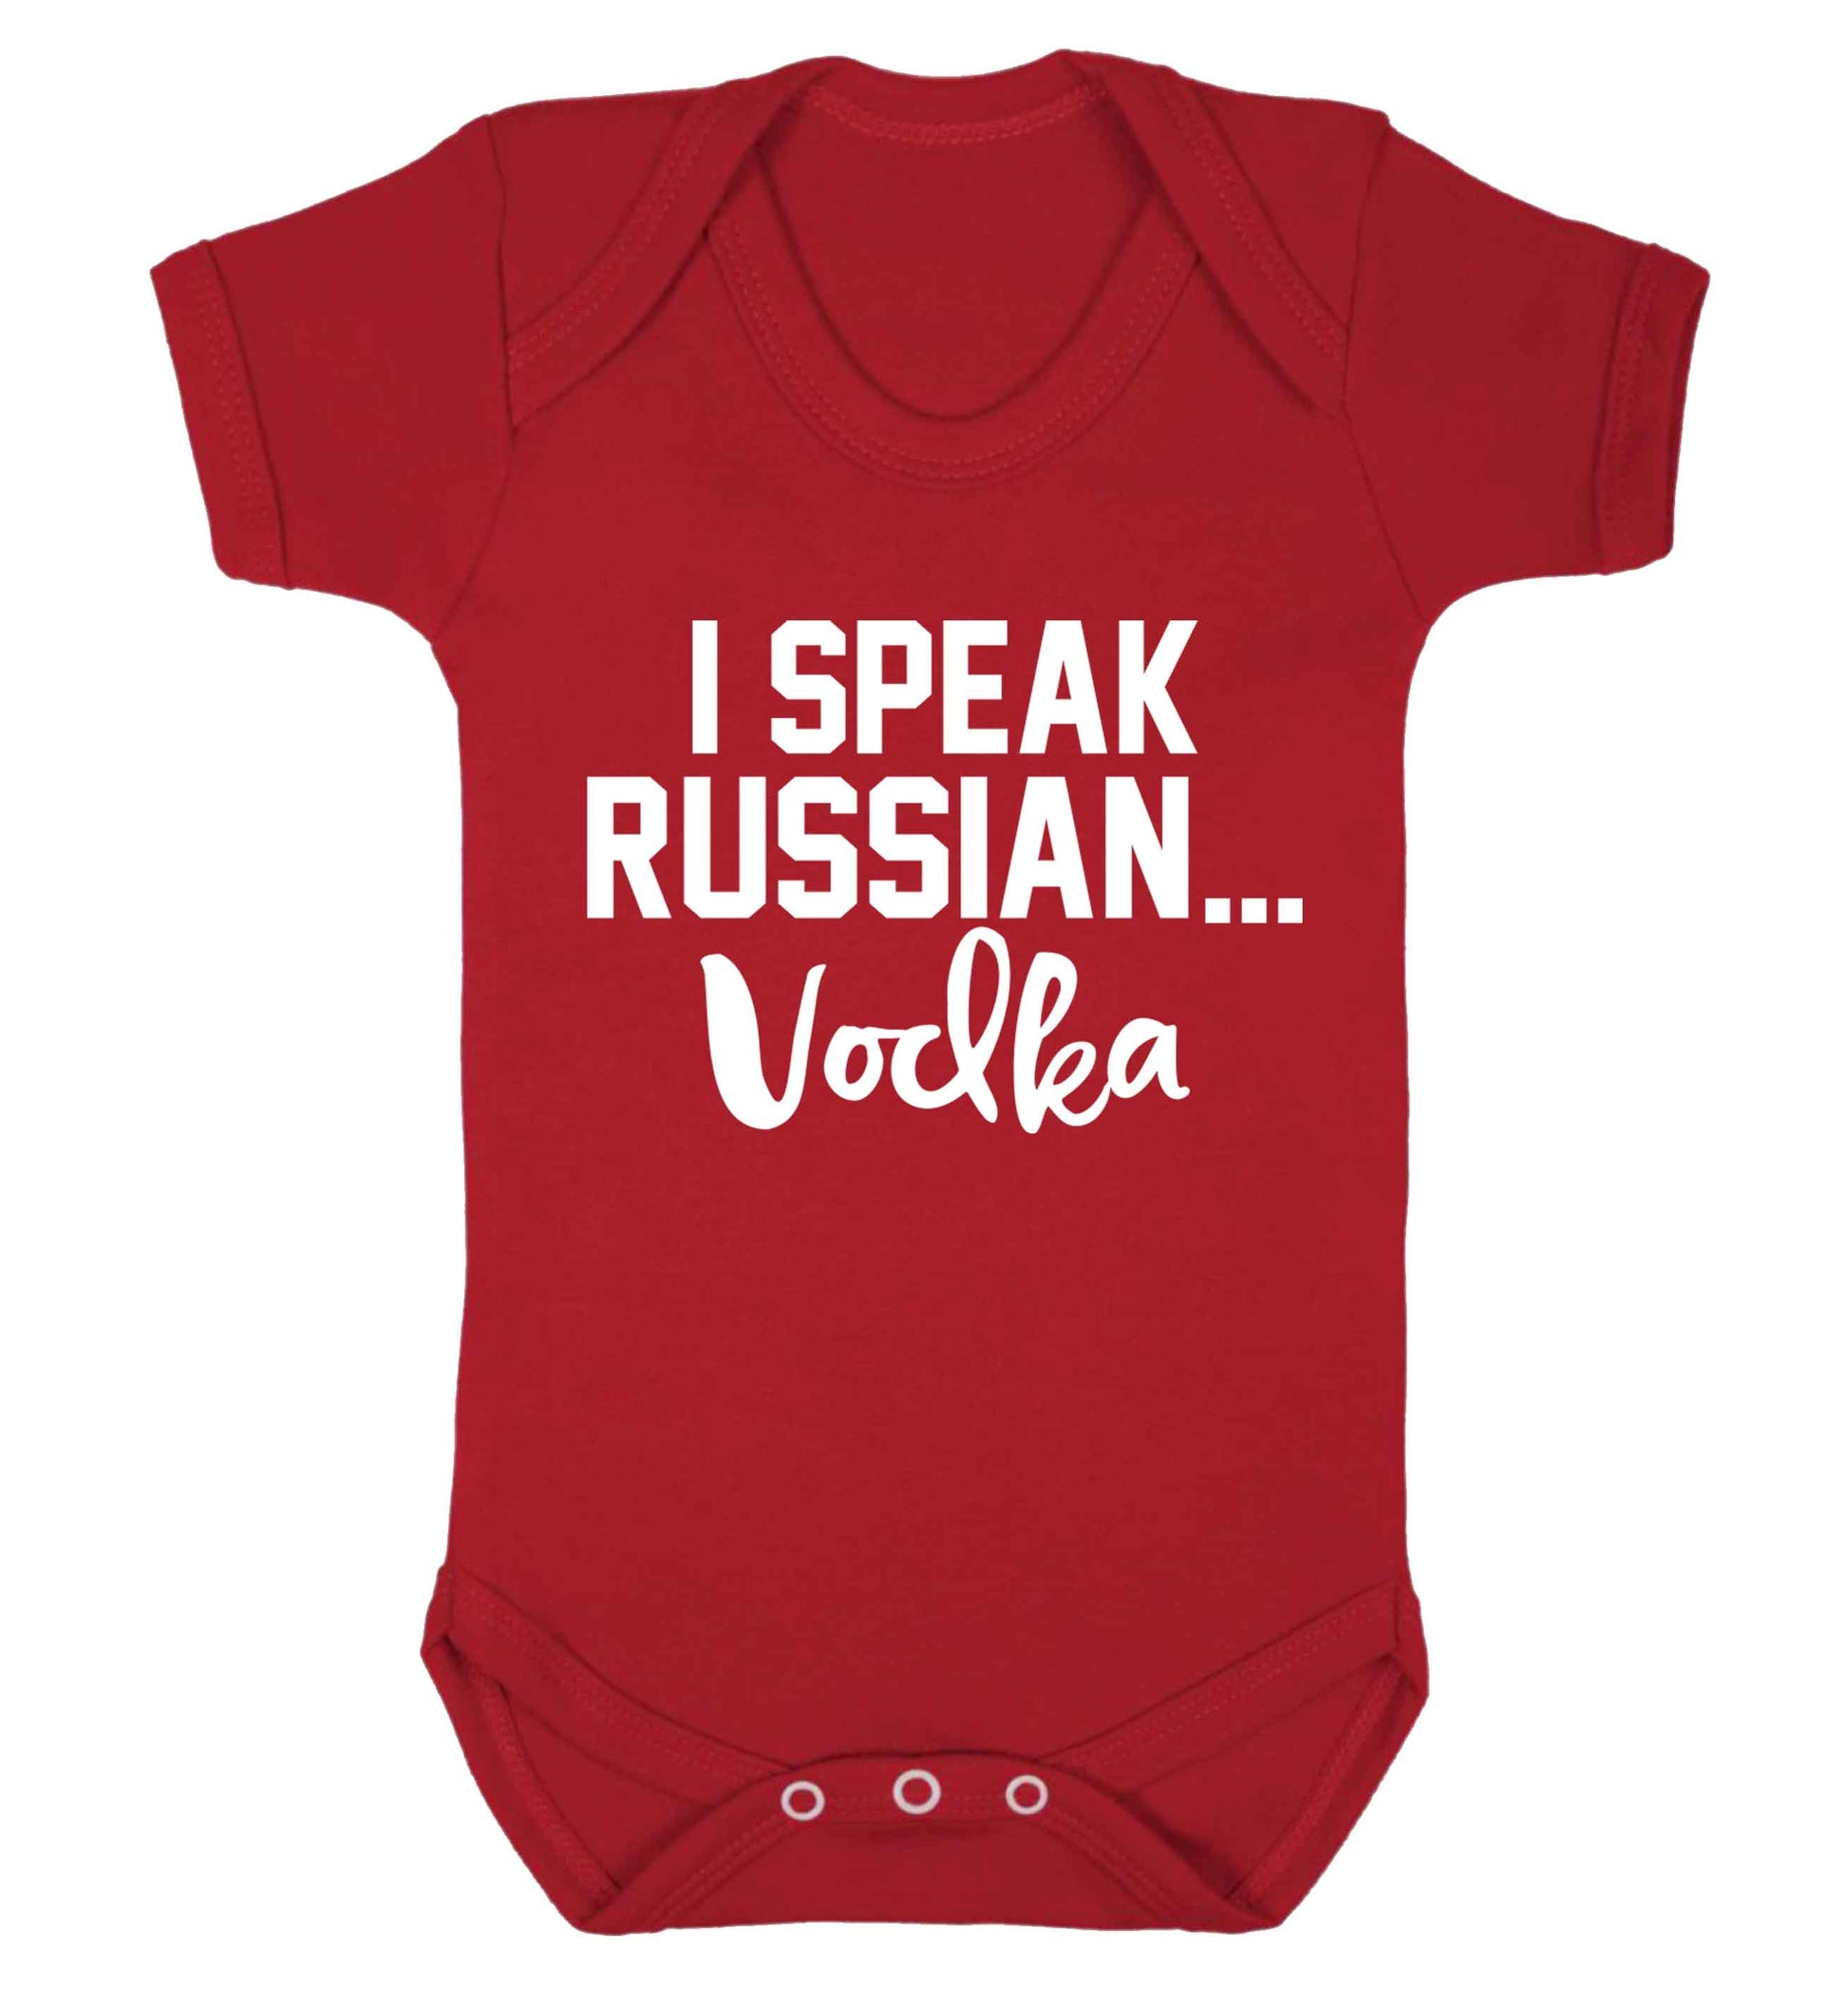 I speak russian...vodka Baby Vest red 18-24 months